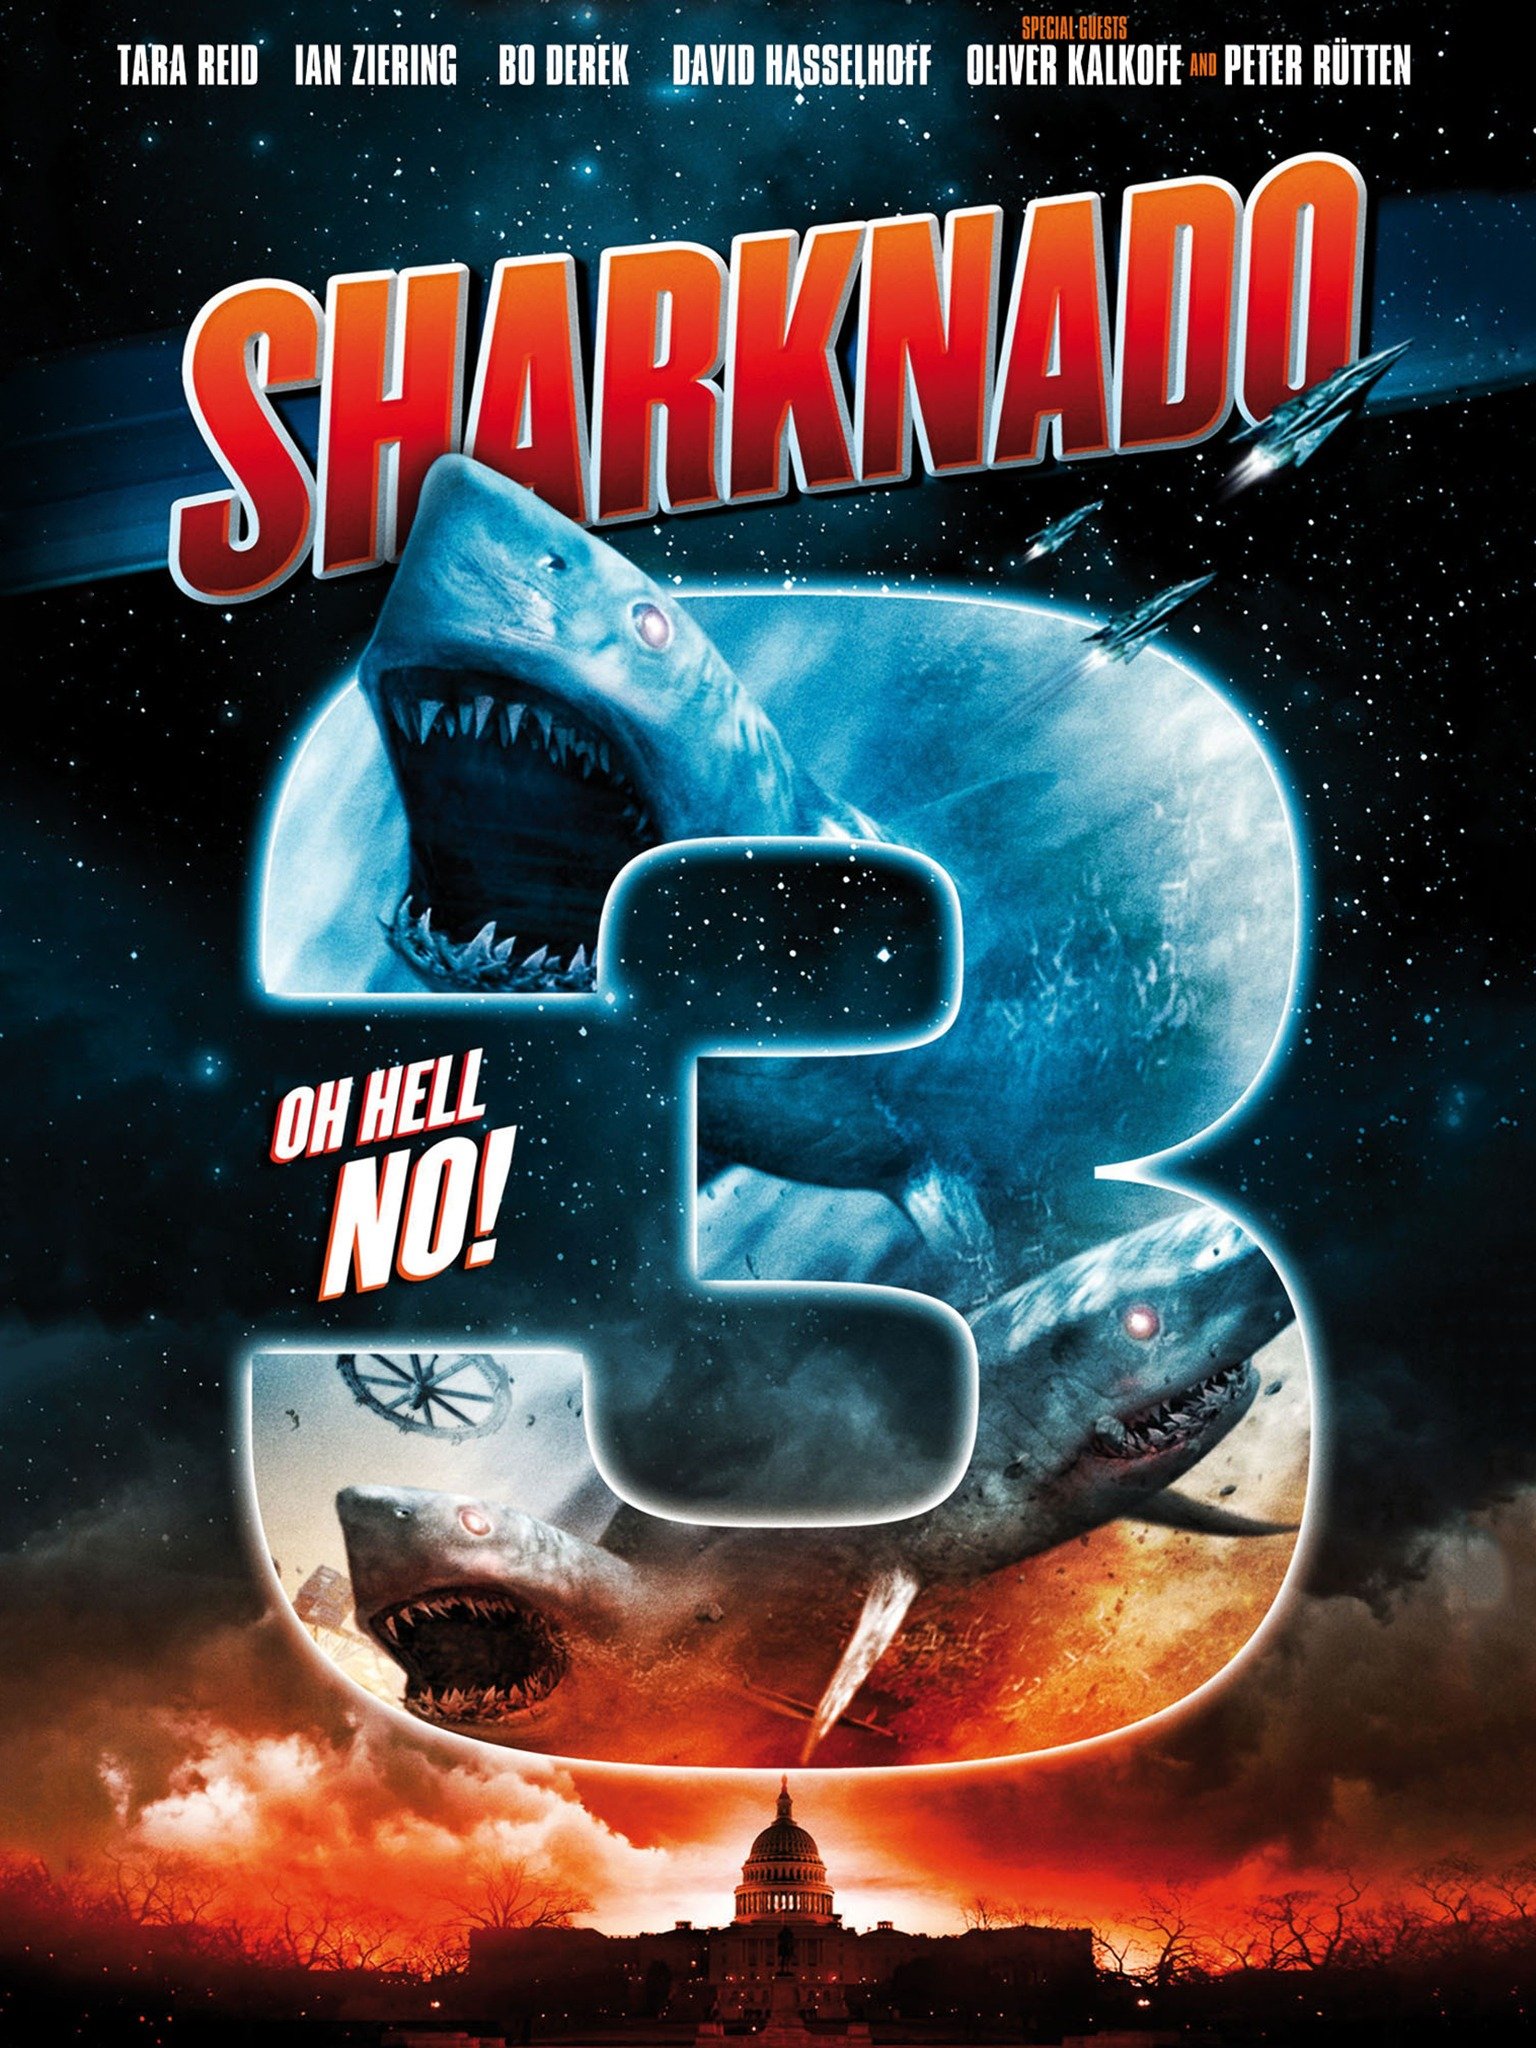 "Sharknado 3: Oh Hell No! photo 6"